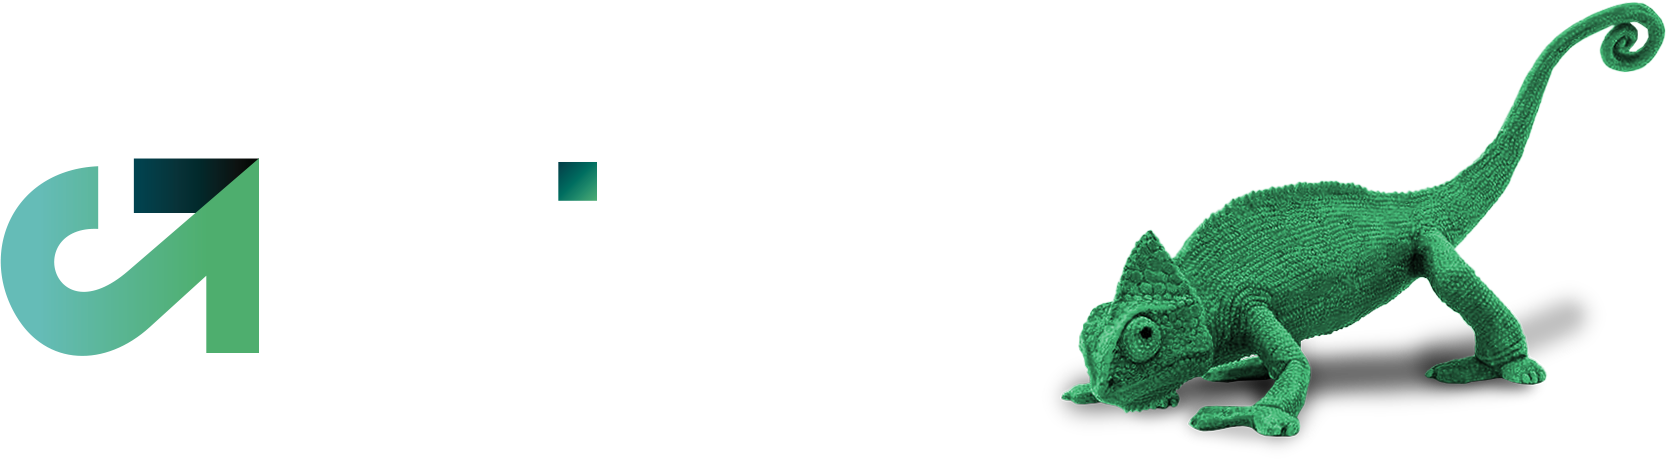 CLICKER SPORTS em Itajaí, SC - Consulta Empresa